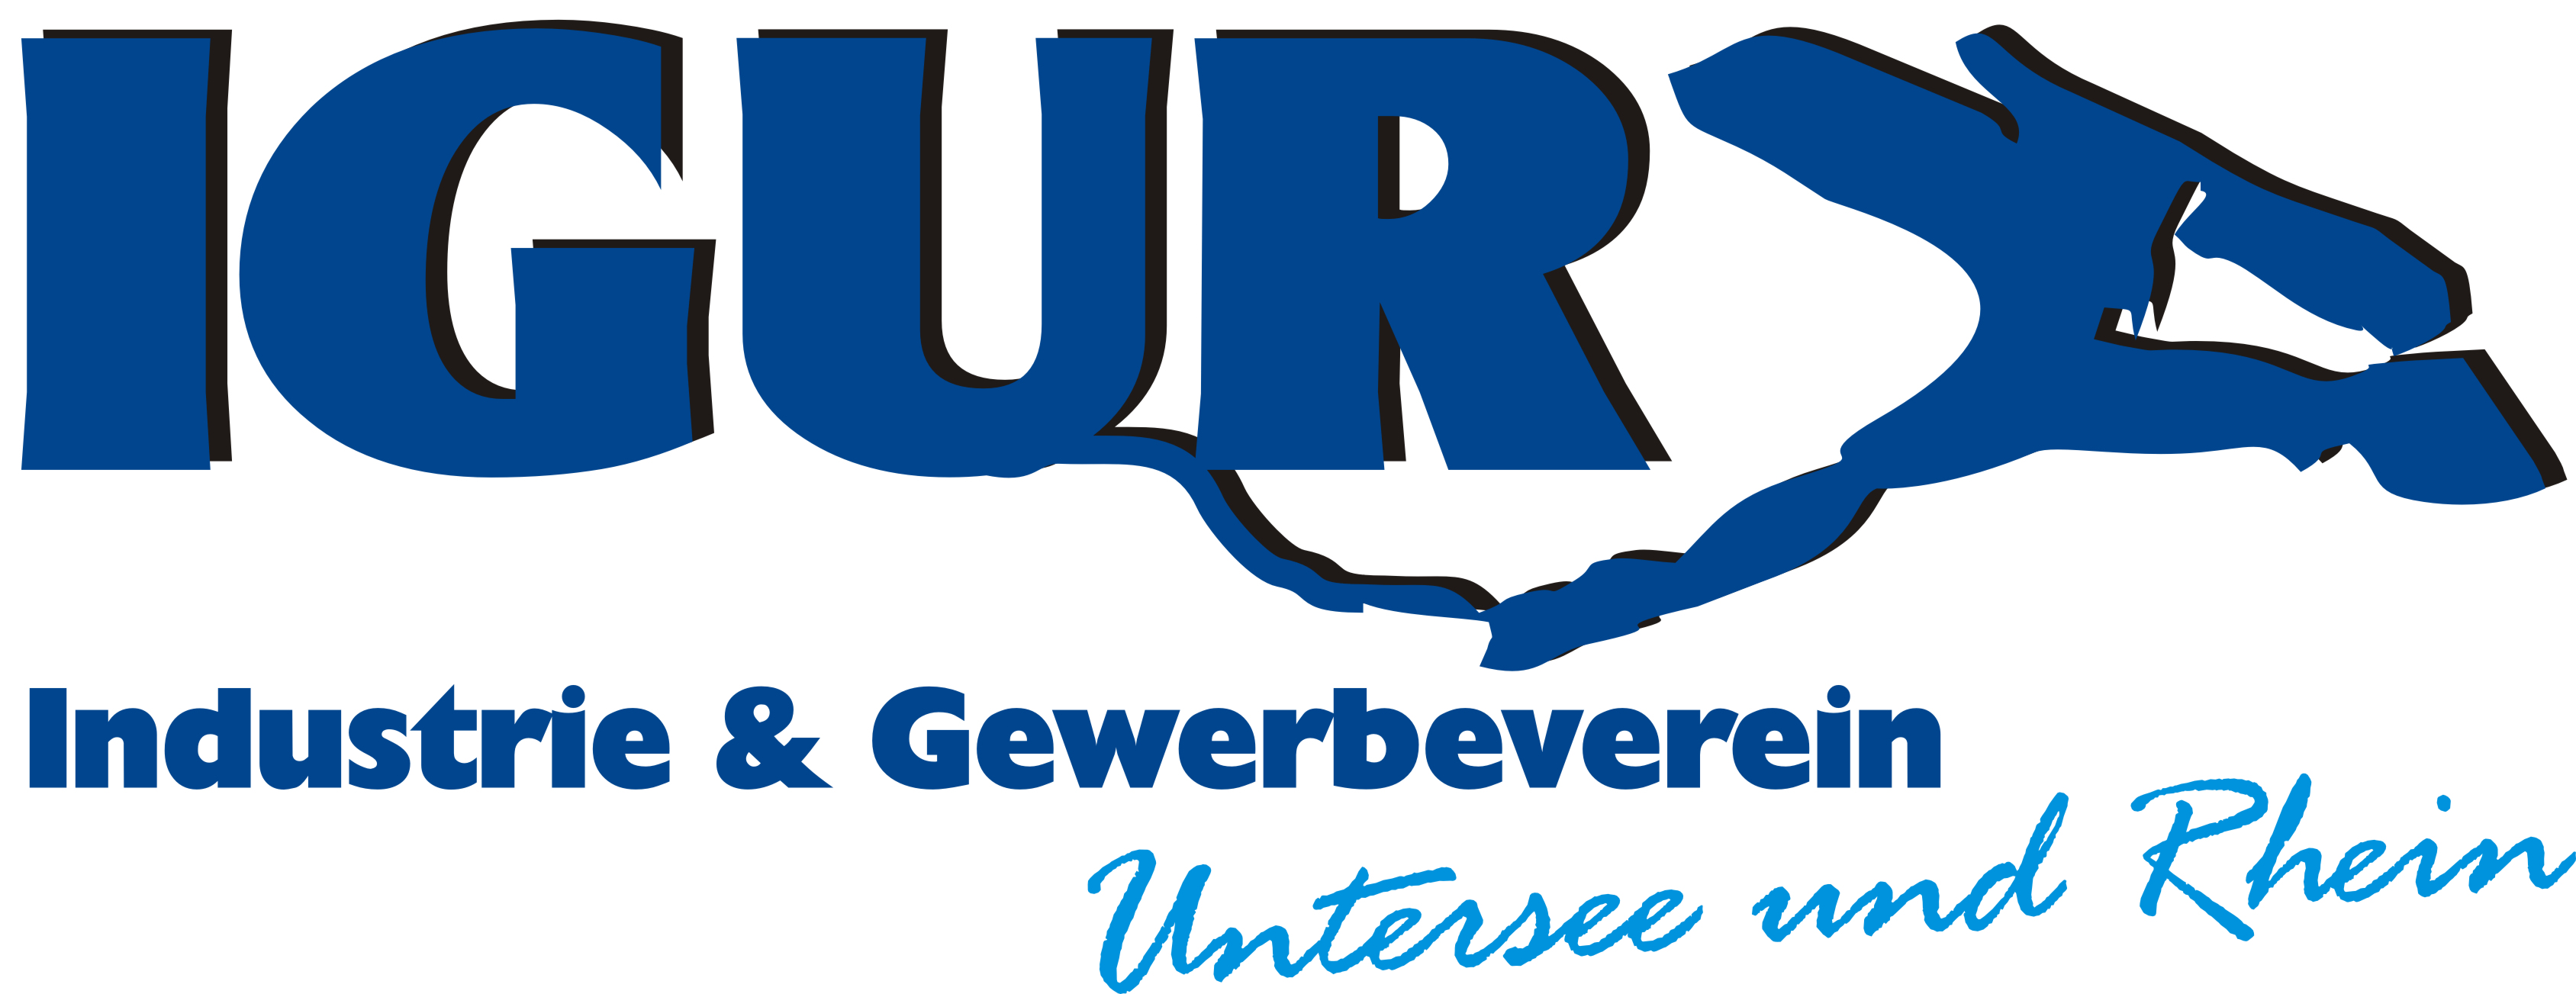 Logo - Industrie und Gewerbeverein Untersee und Rhein